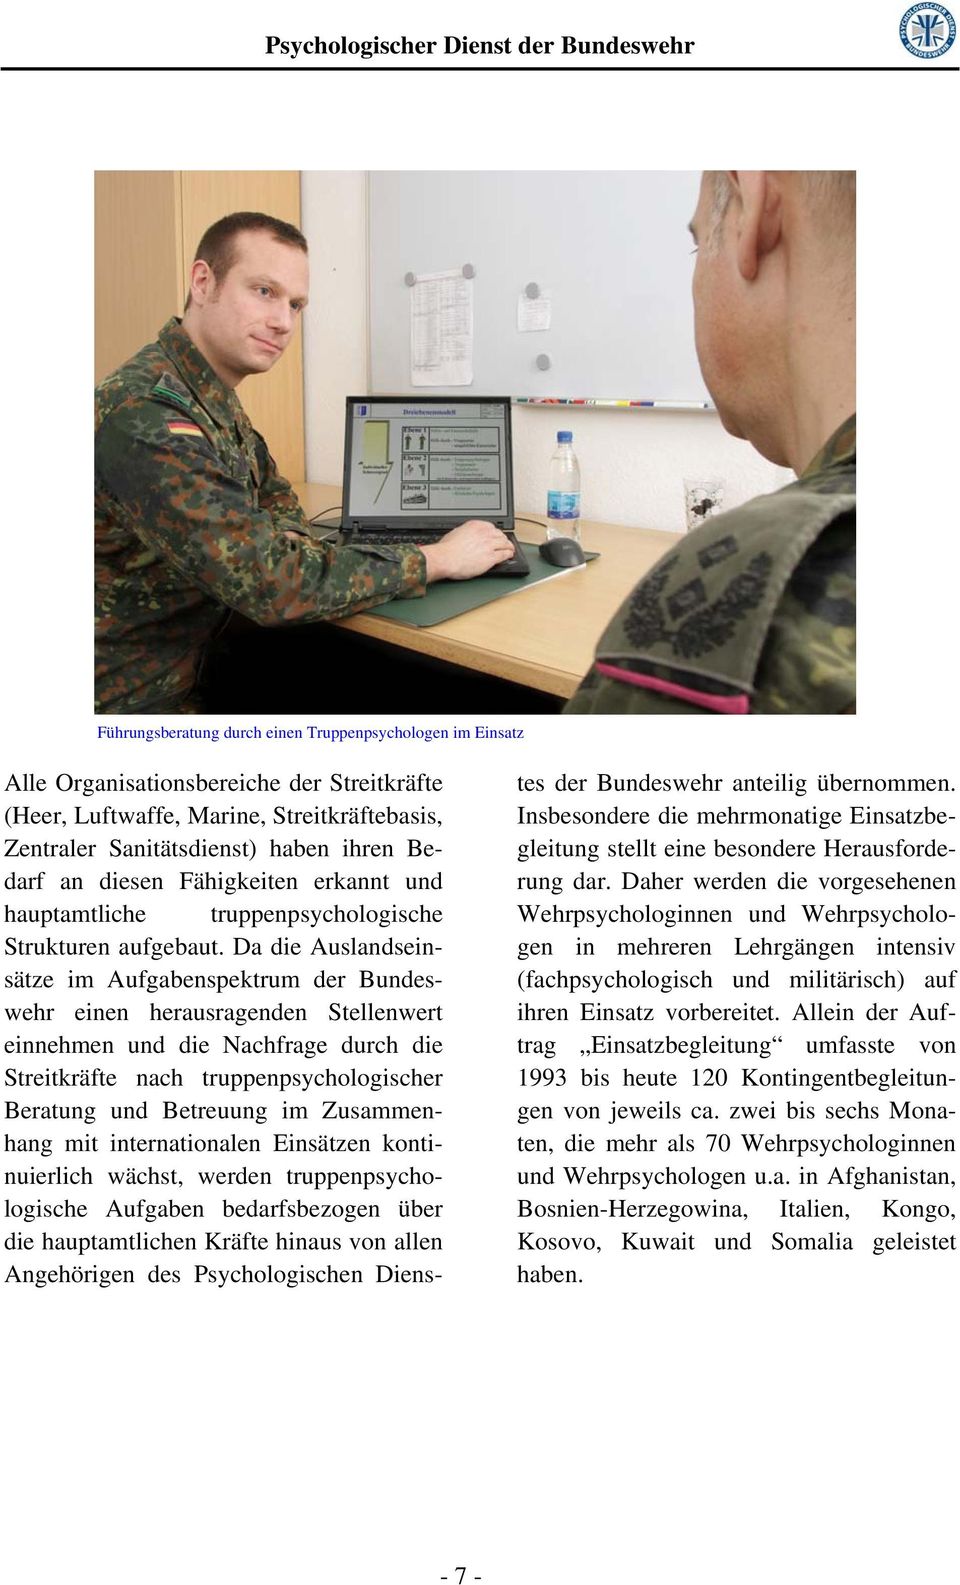 Da die Auslandseinsätze im Aufgabenspektrum der Bundeswehr einen herausragenden Stellenwert einnehmen und die Nachfrage durch die Streitkräfte nach truppenpsychologischer Beratung und Betreuung im